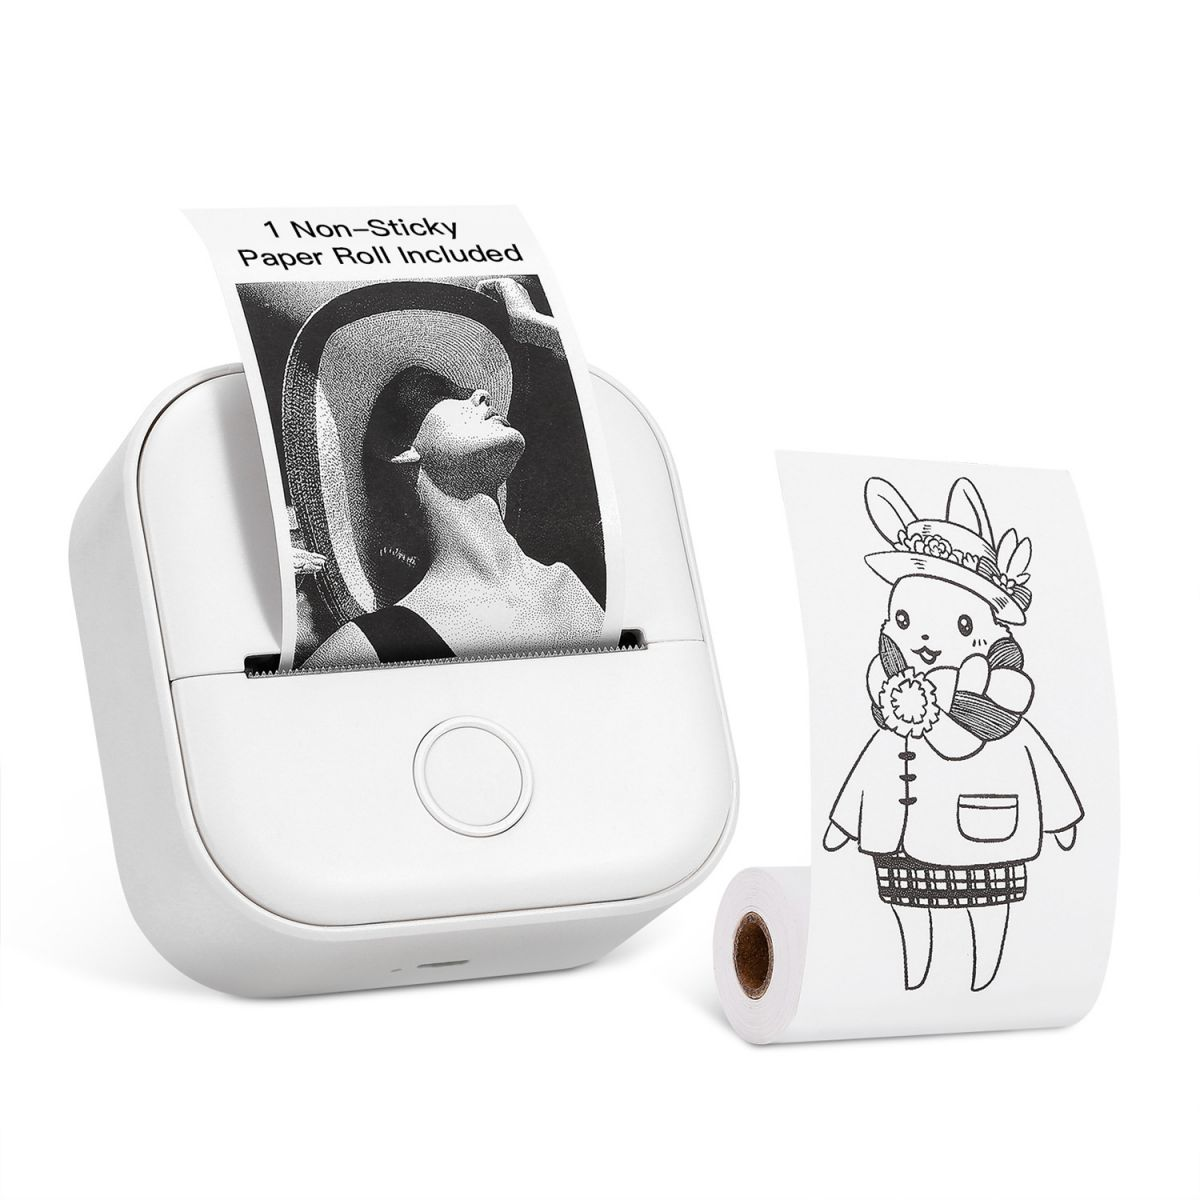 KINSI Tragbar Etikettendrucker,Mini TaschenaufkleberDrucker,Bluetooth Wireless Schwarz-Weiß-Druck Drucker